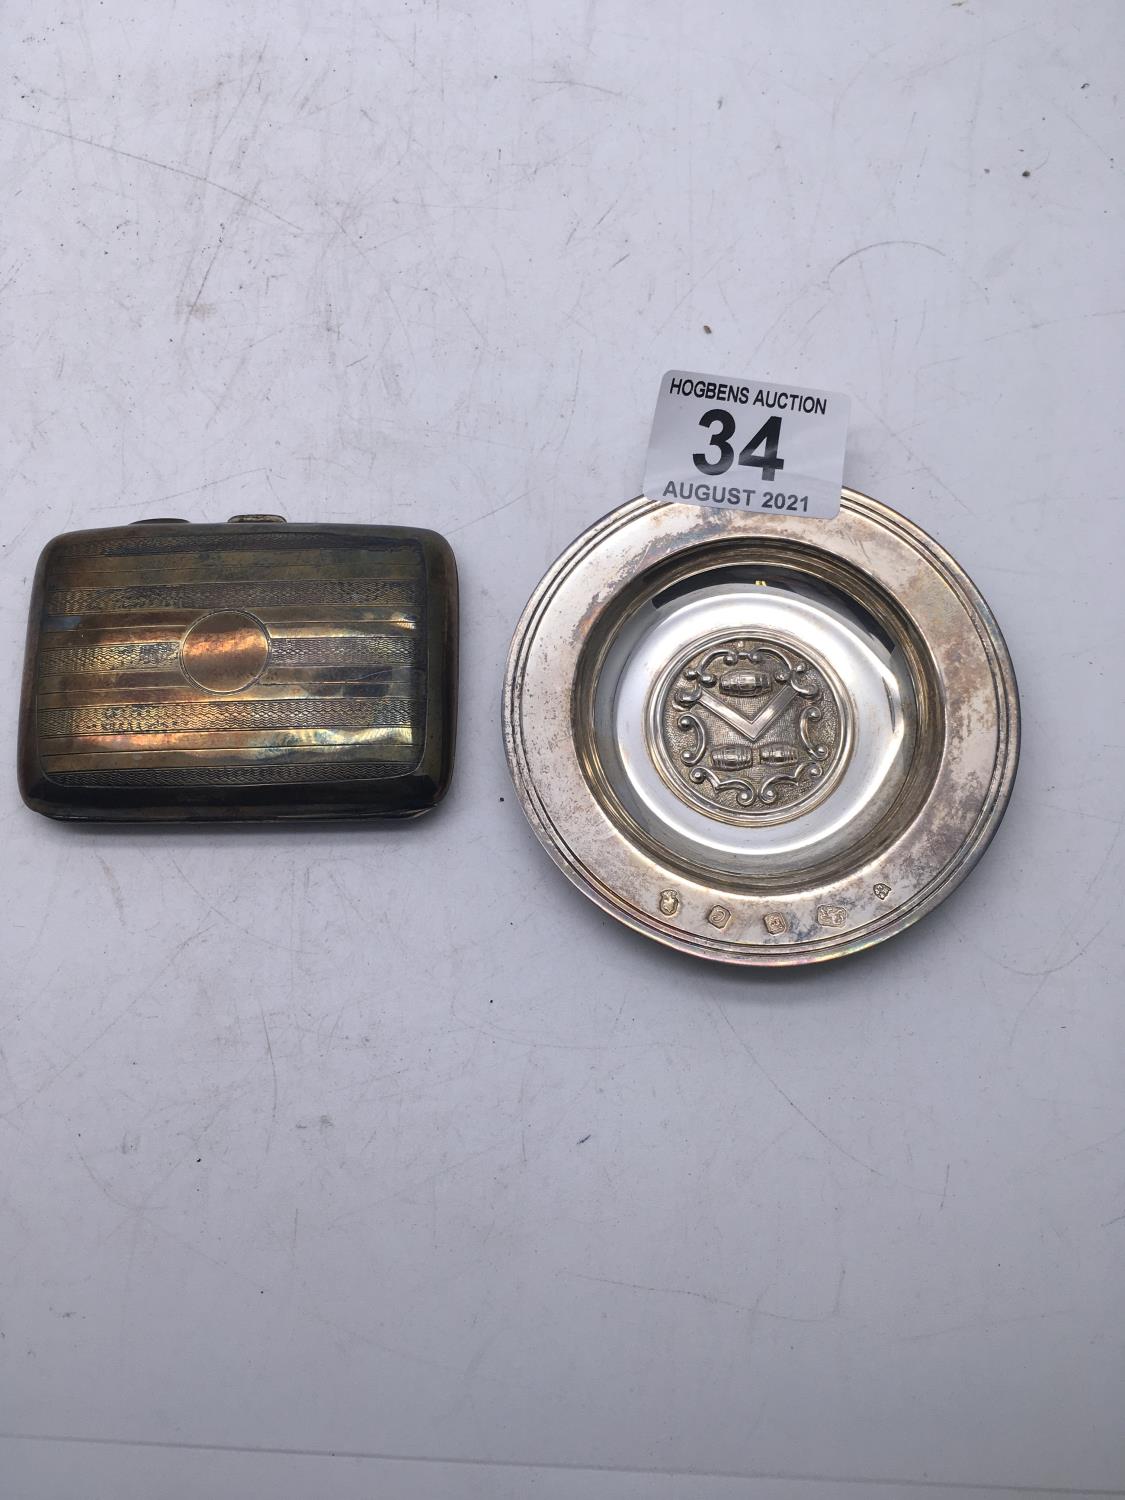 Silver cigarette case 55 grams and a silver commemorative dish, 4" dia grams - Image 2 of 4